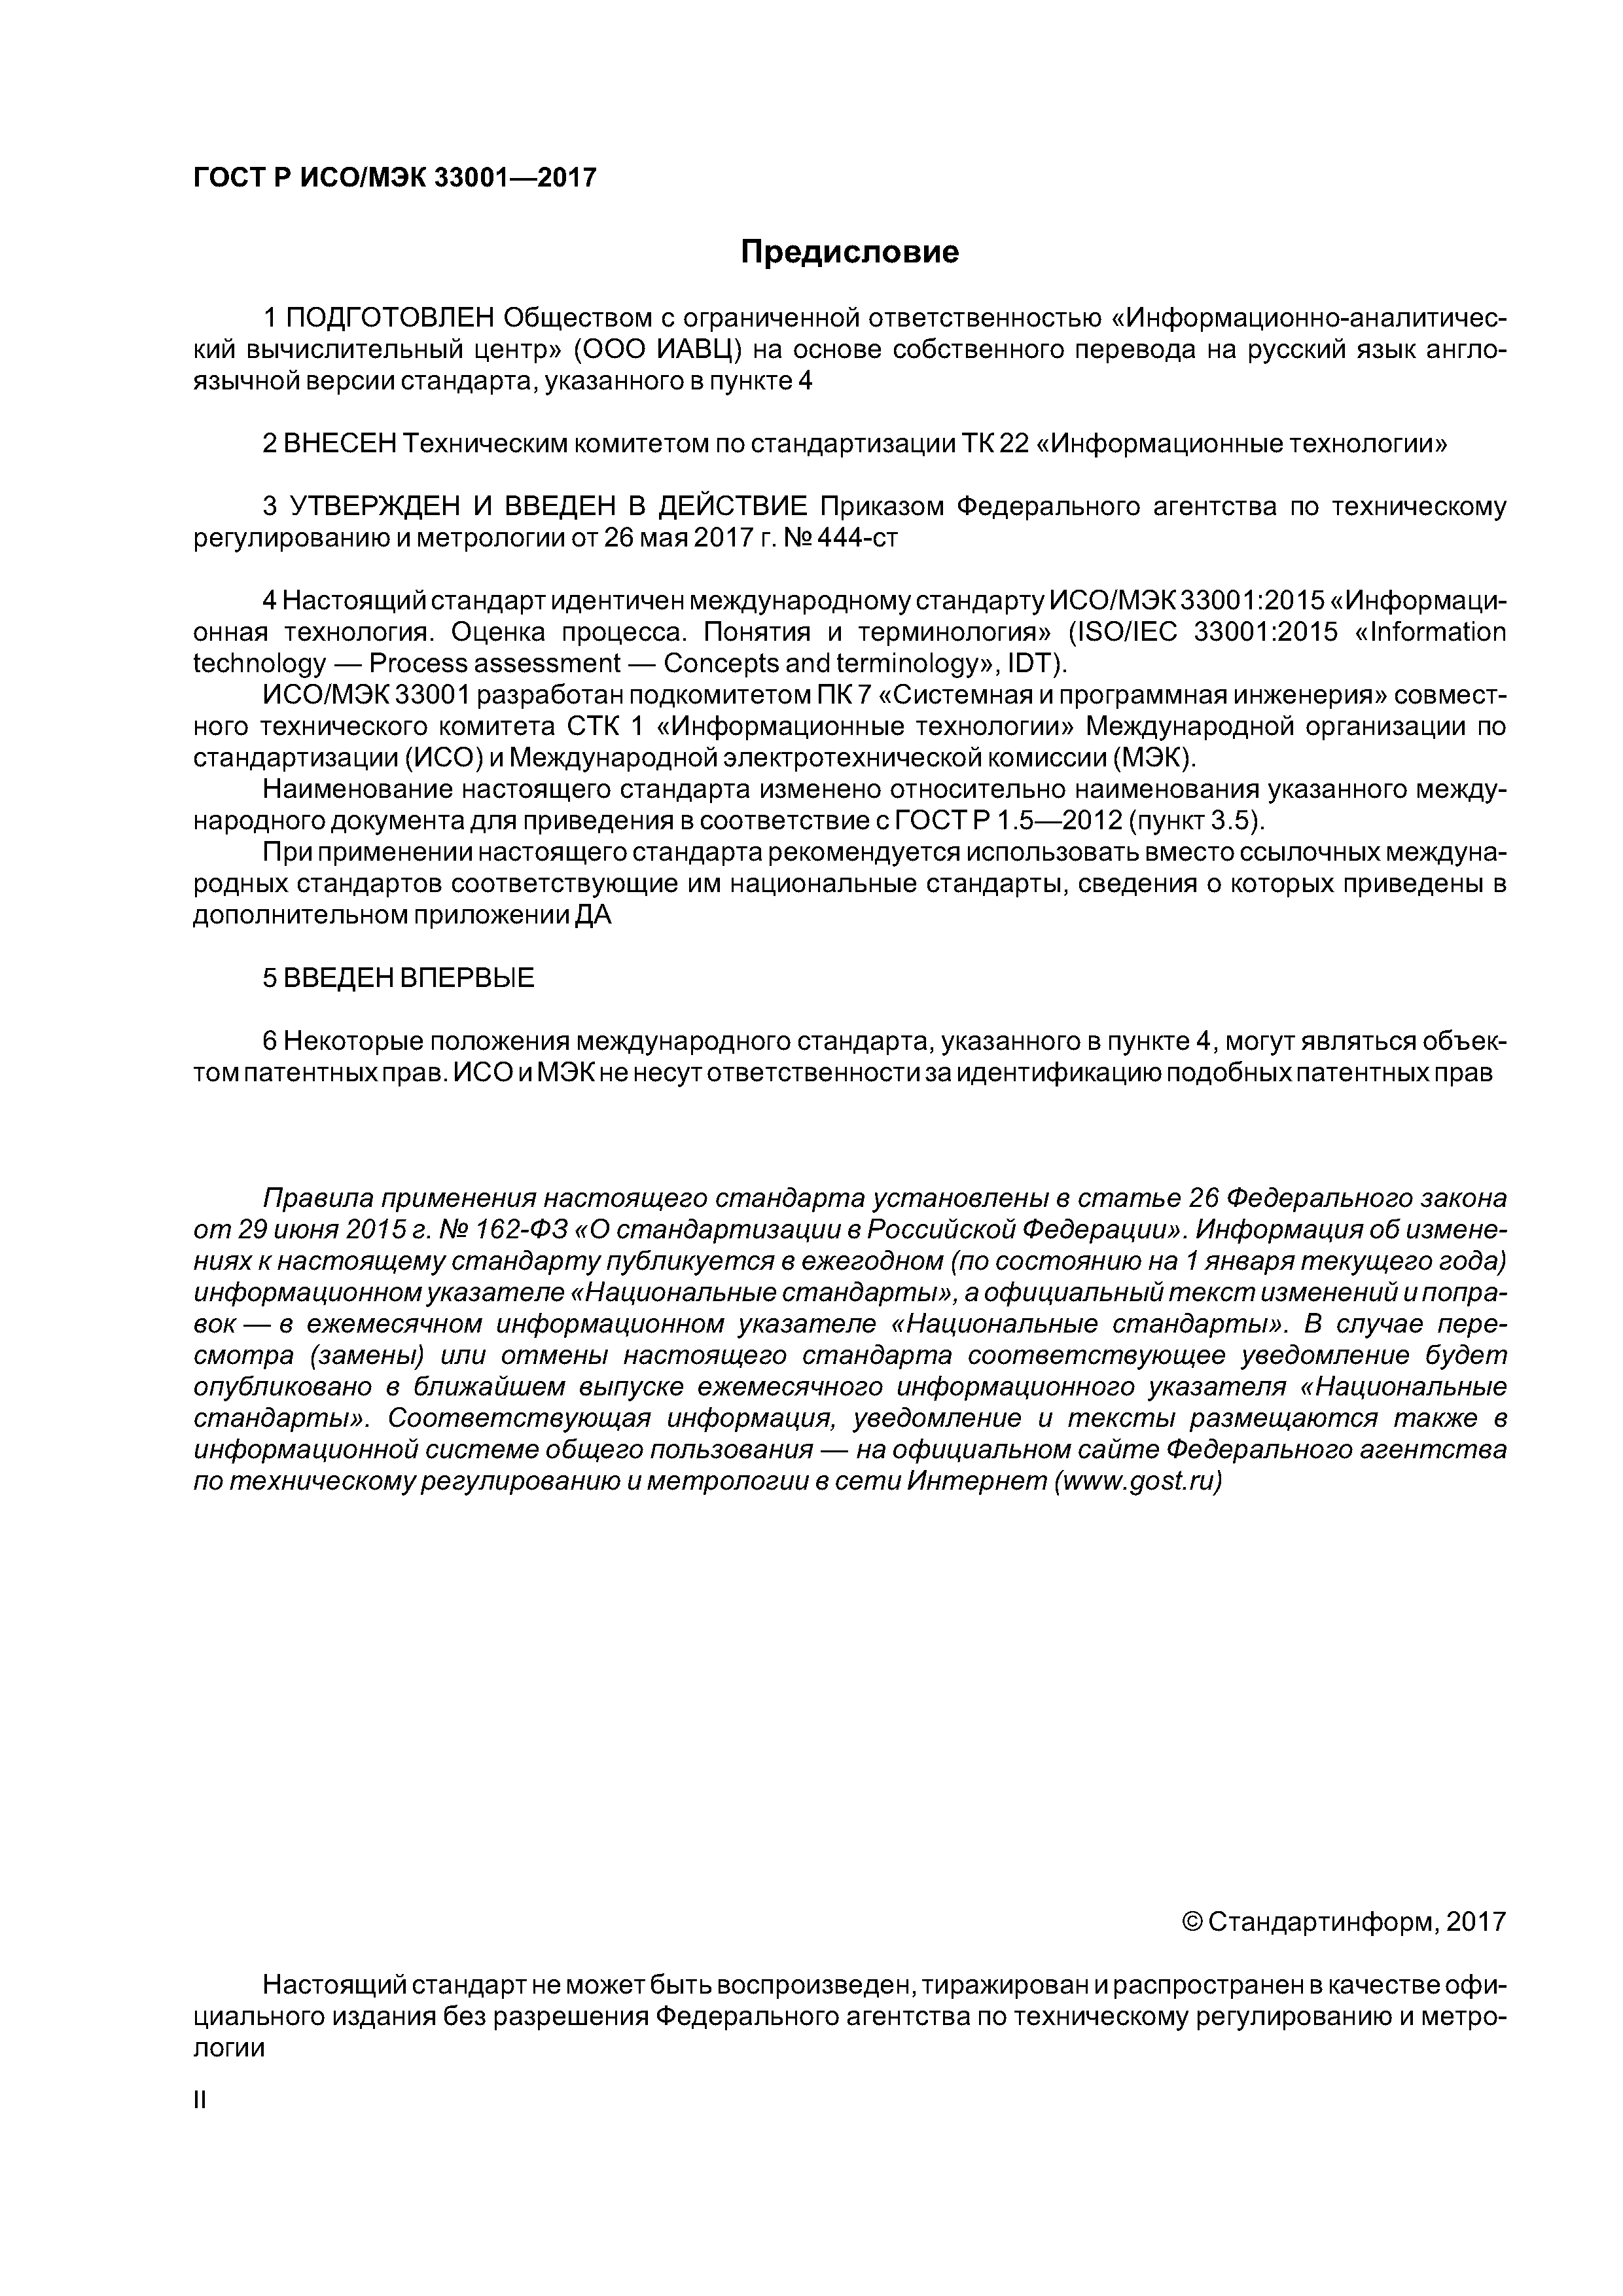 ГОСТ Р ИСО/МЭК 33001-2017